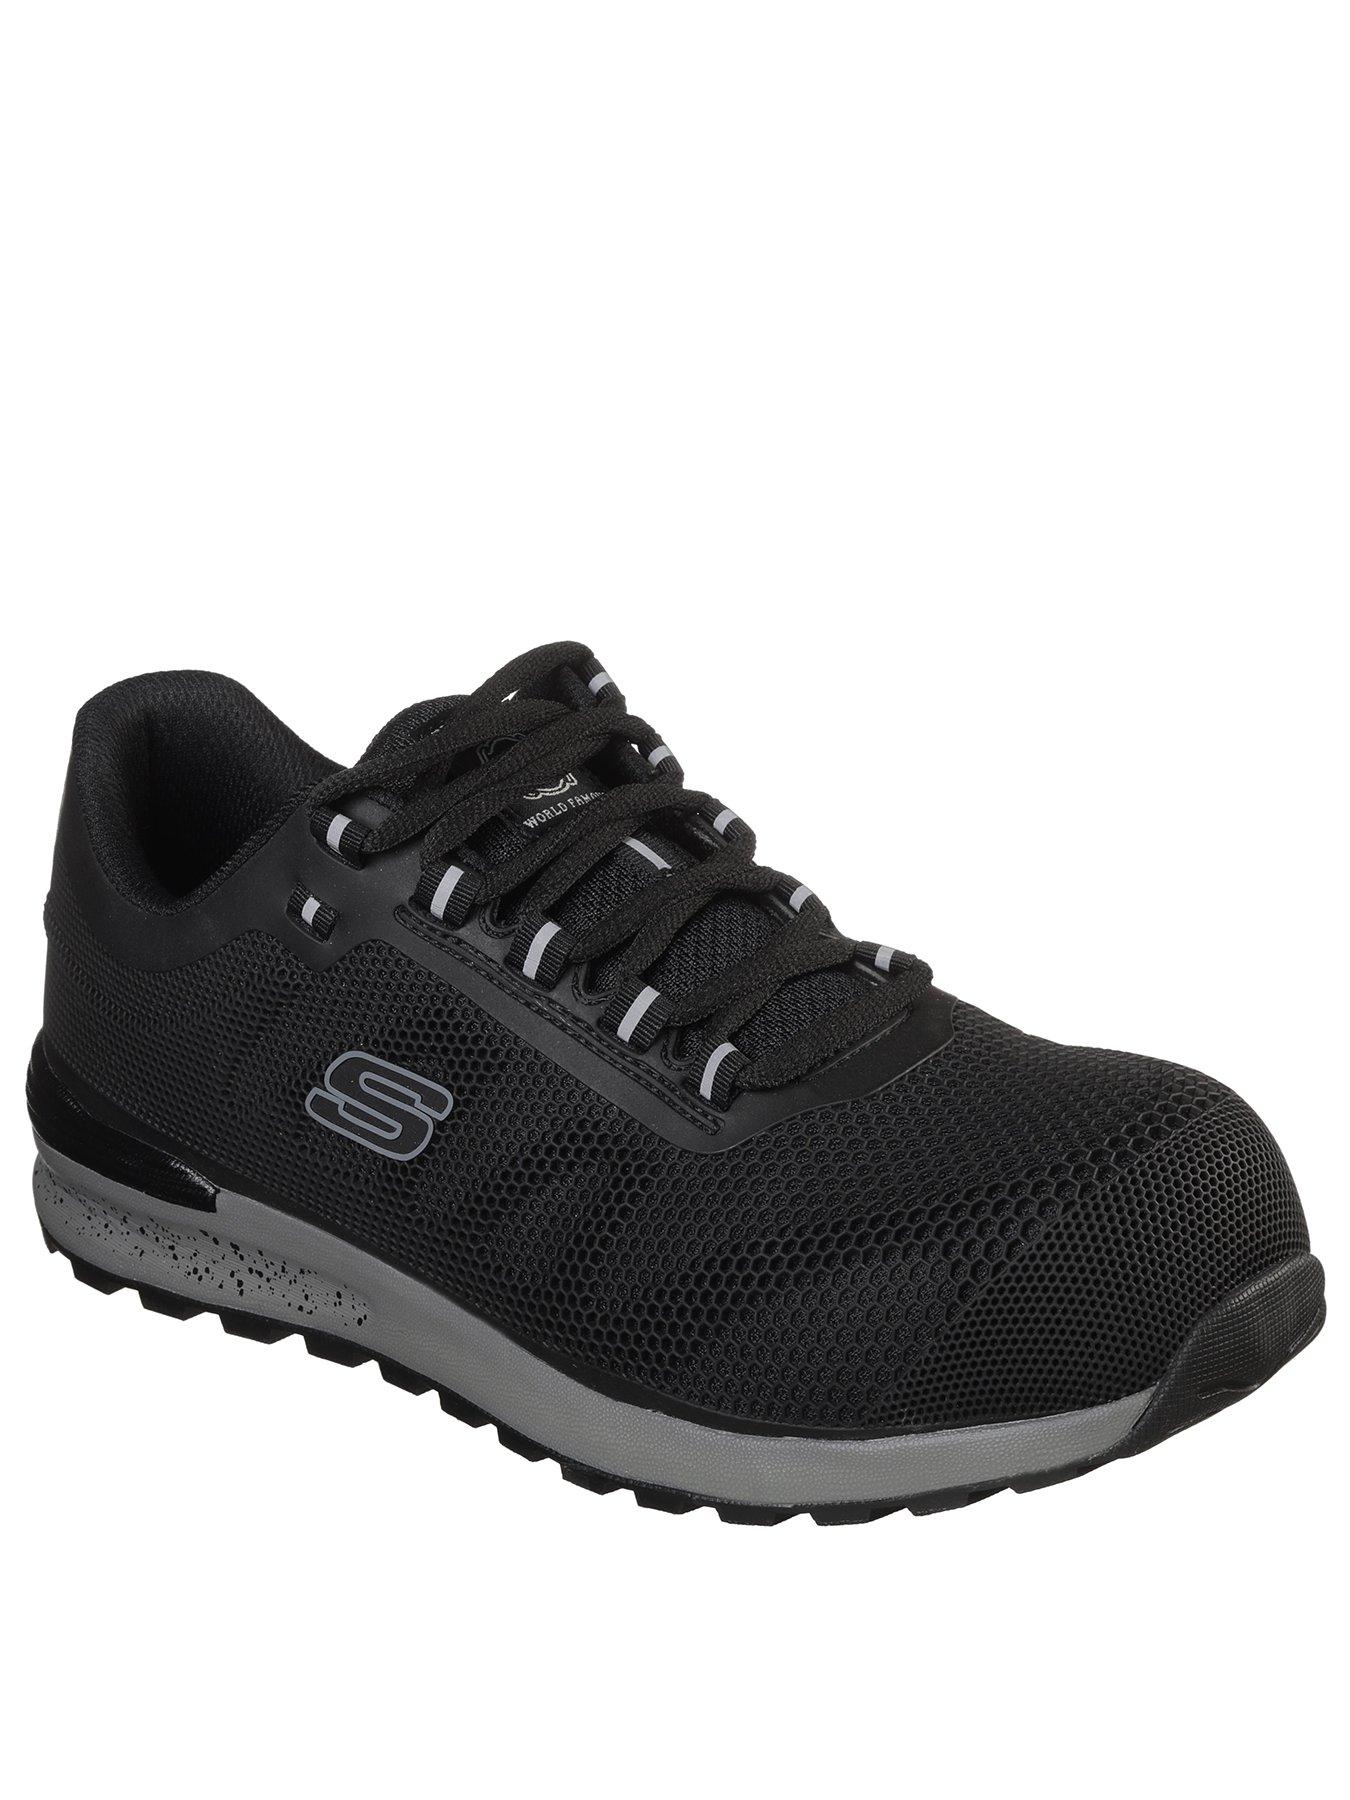 Skechers Safety Bulklin Shoes - Black | very.co.uk